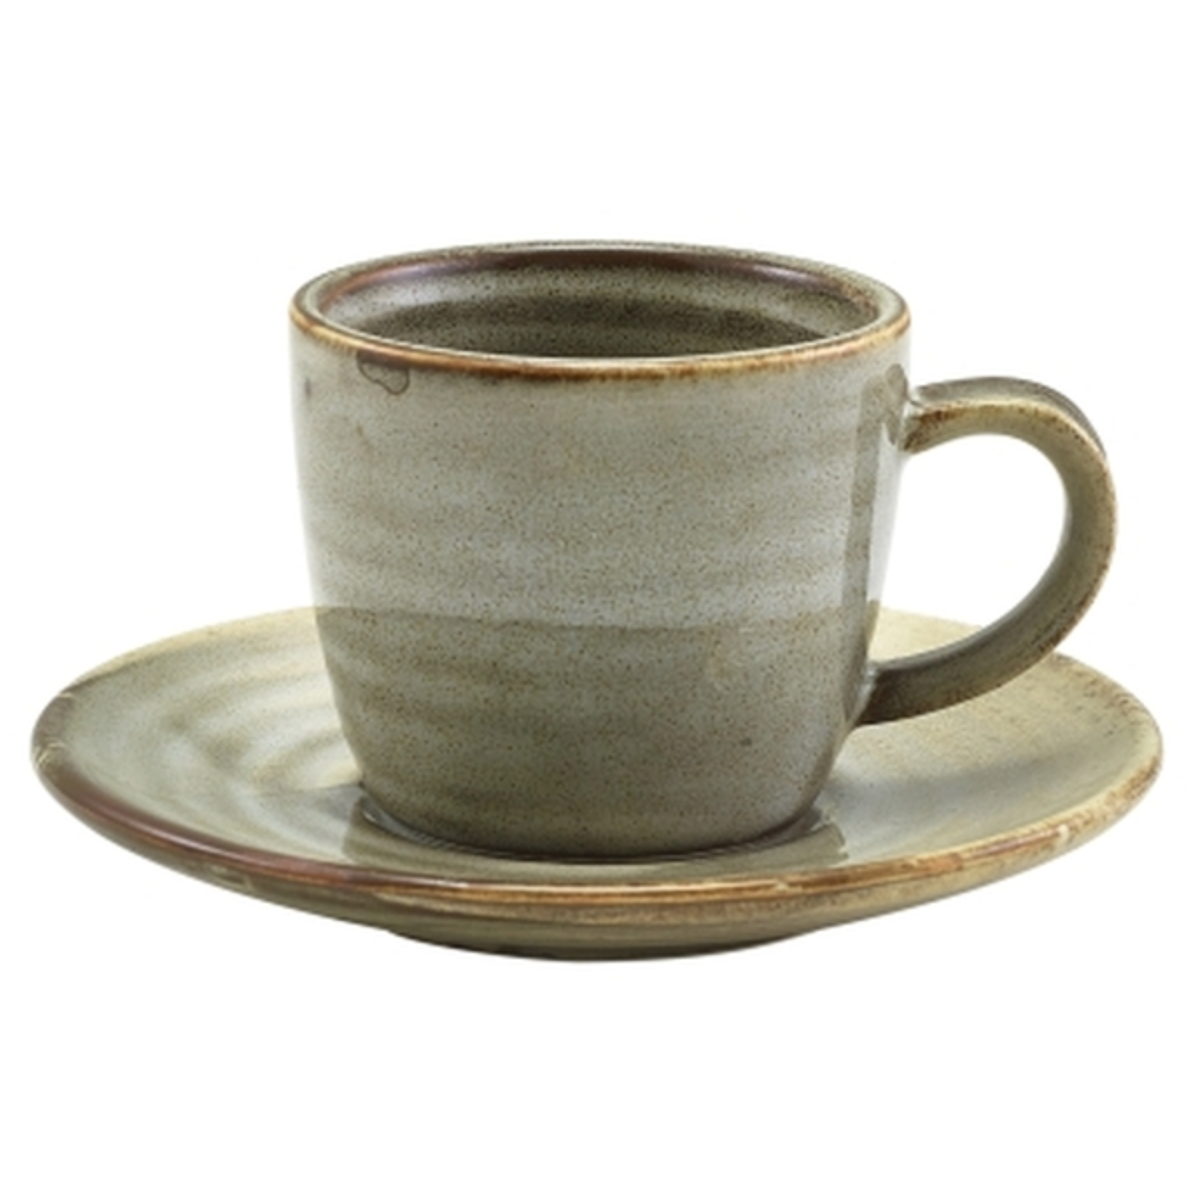 GenWare Terra Porcelain Smoke Grey Espresso Cup 9cl/3oz